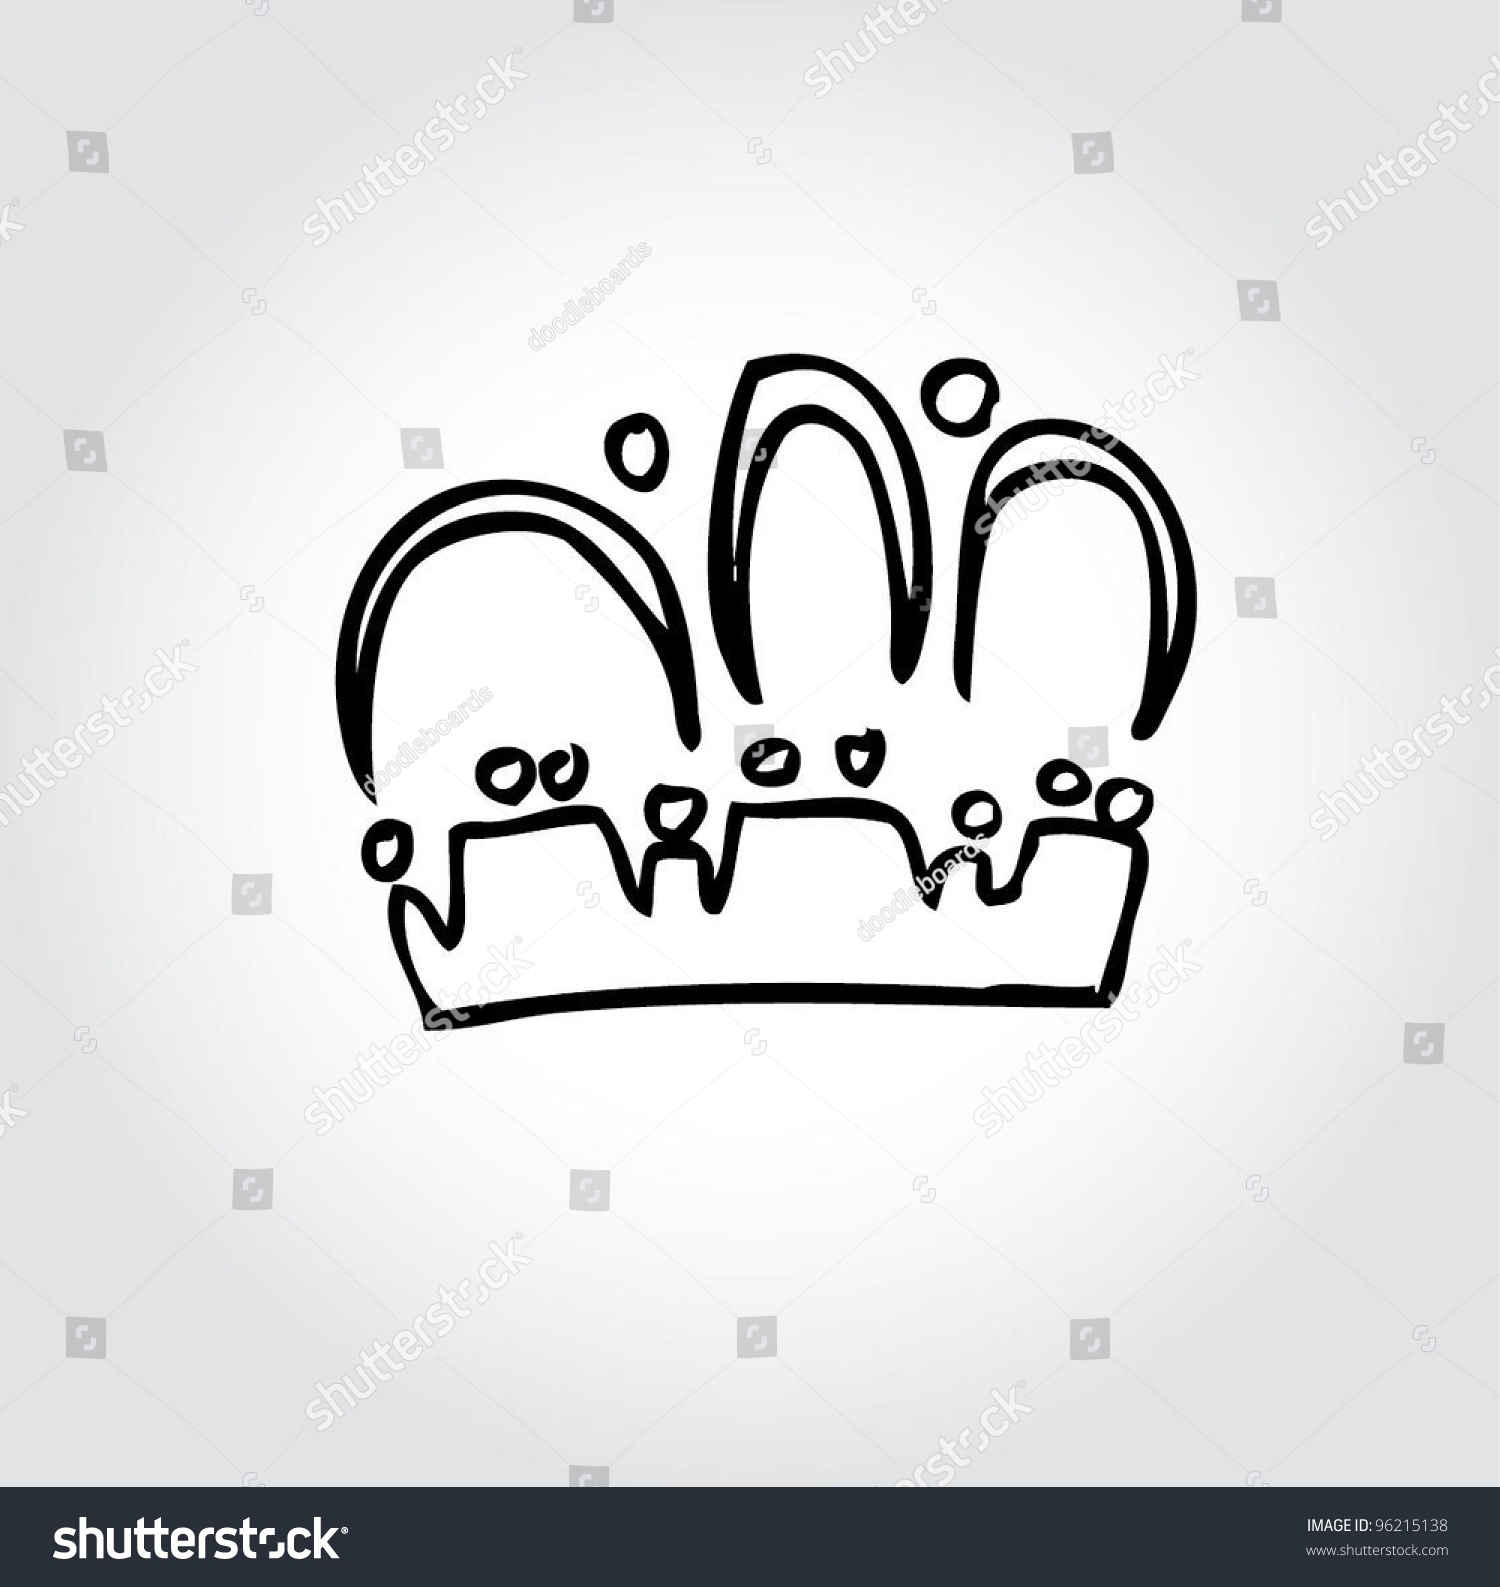 Crown Doodle Vector Good For Kids - 96215138 : Shutterstock